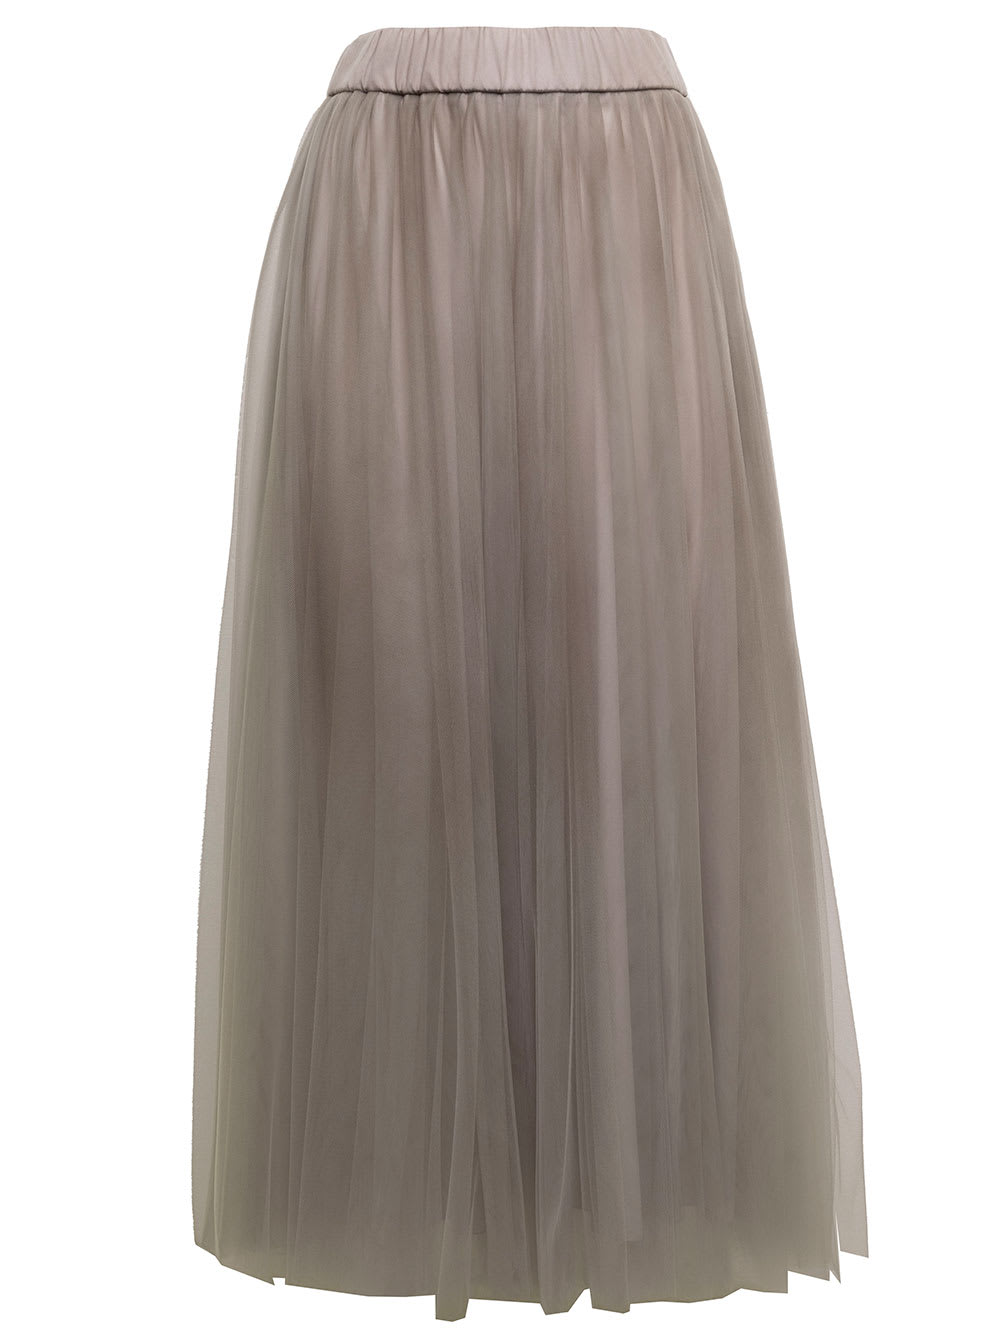 Midi Taupe Colored Tulle Long Skirt Fabiana Filippi Woman